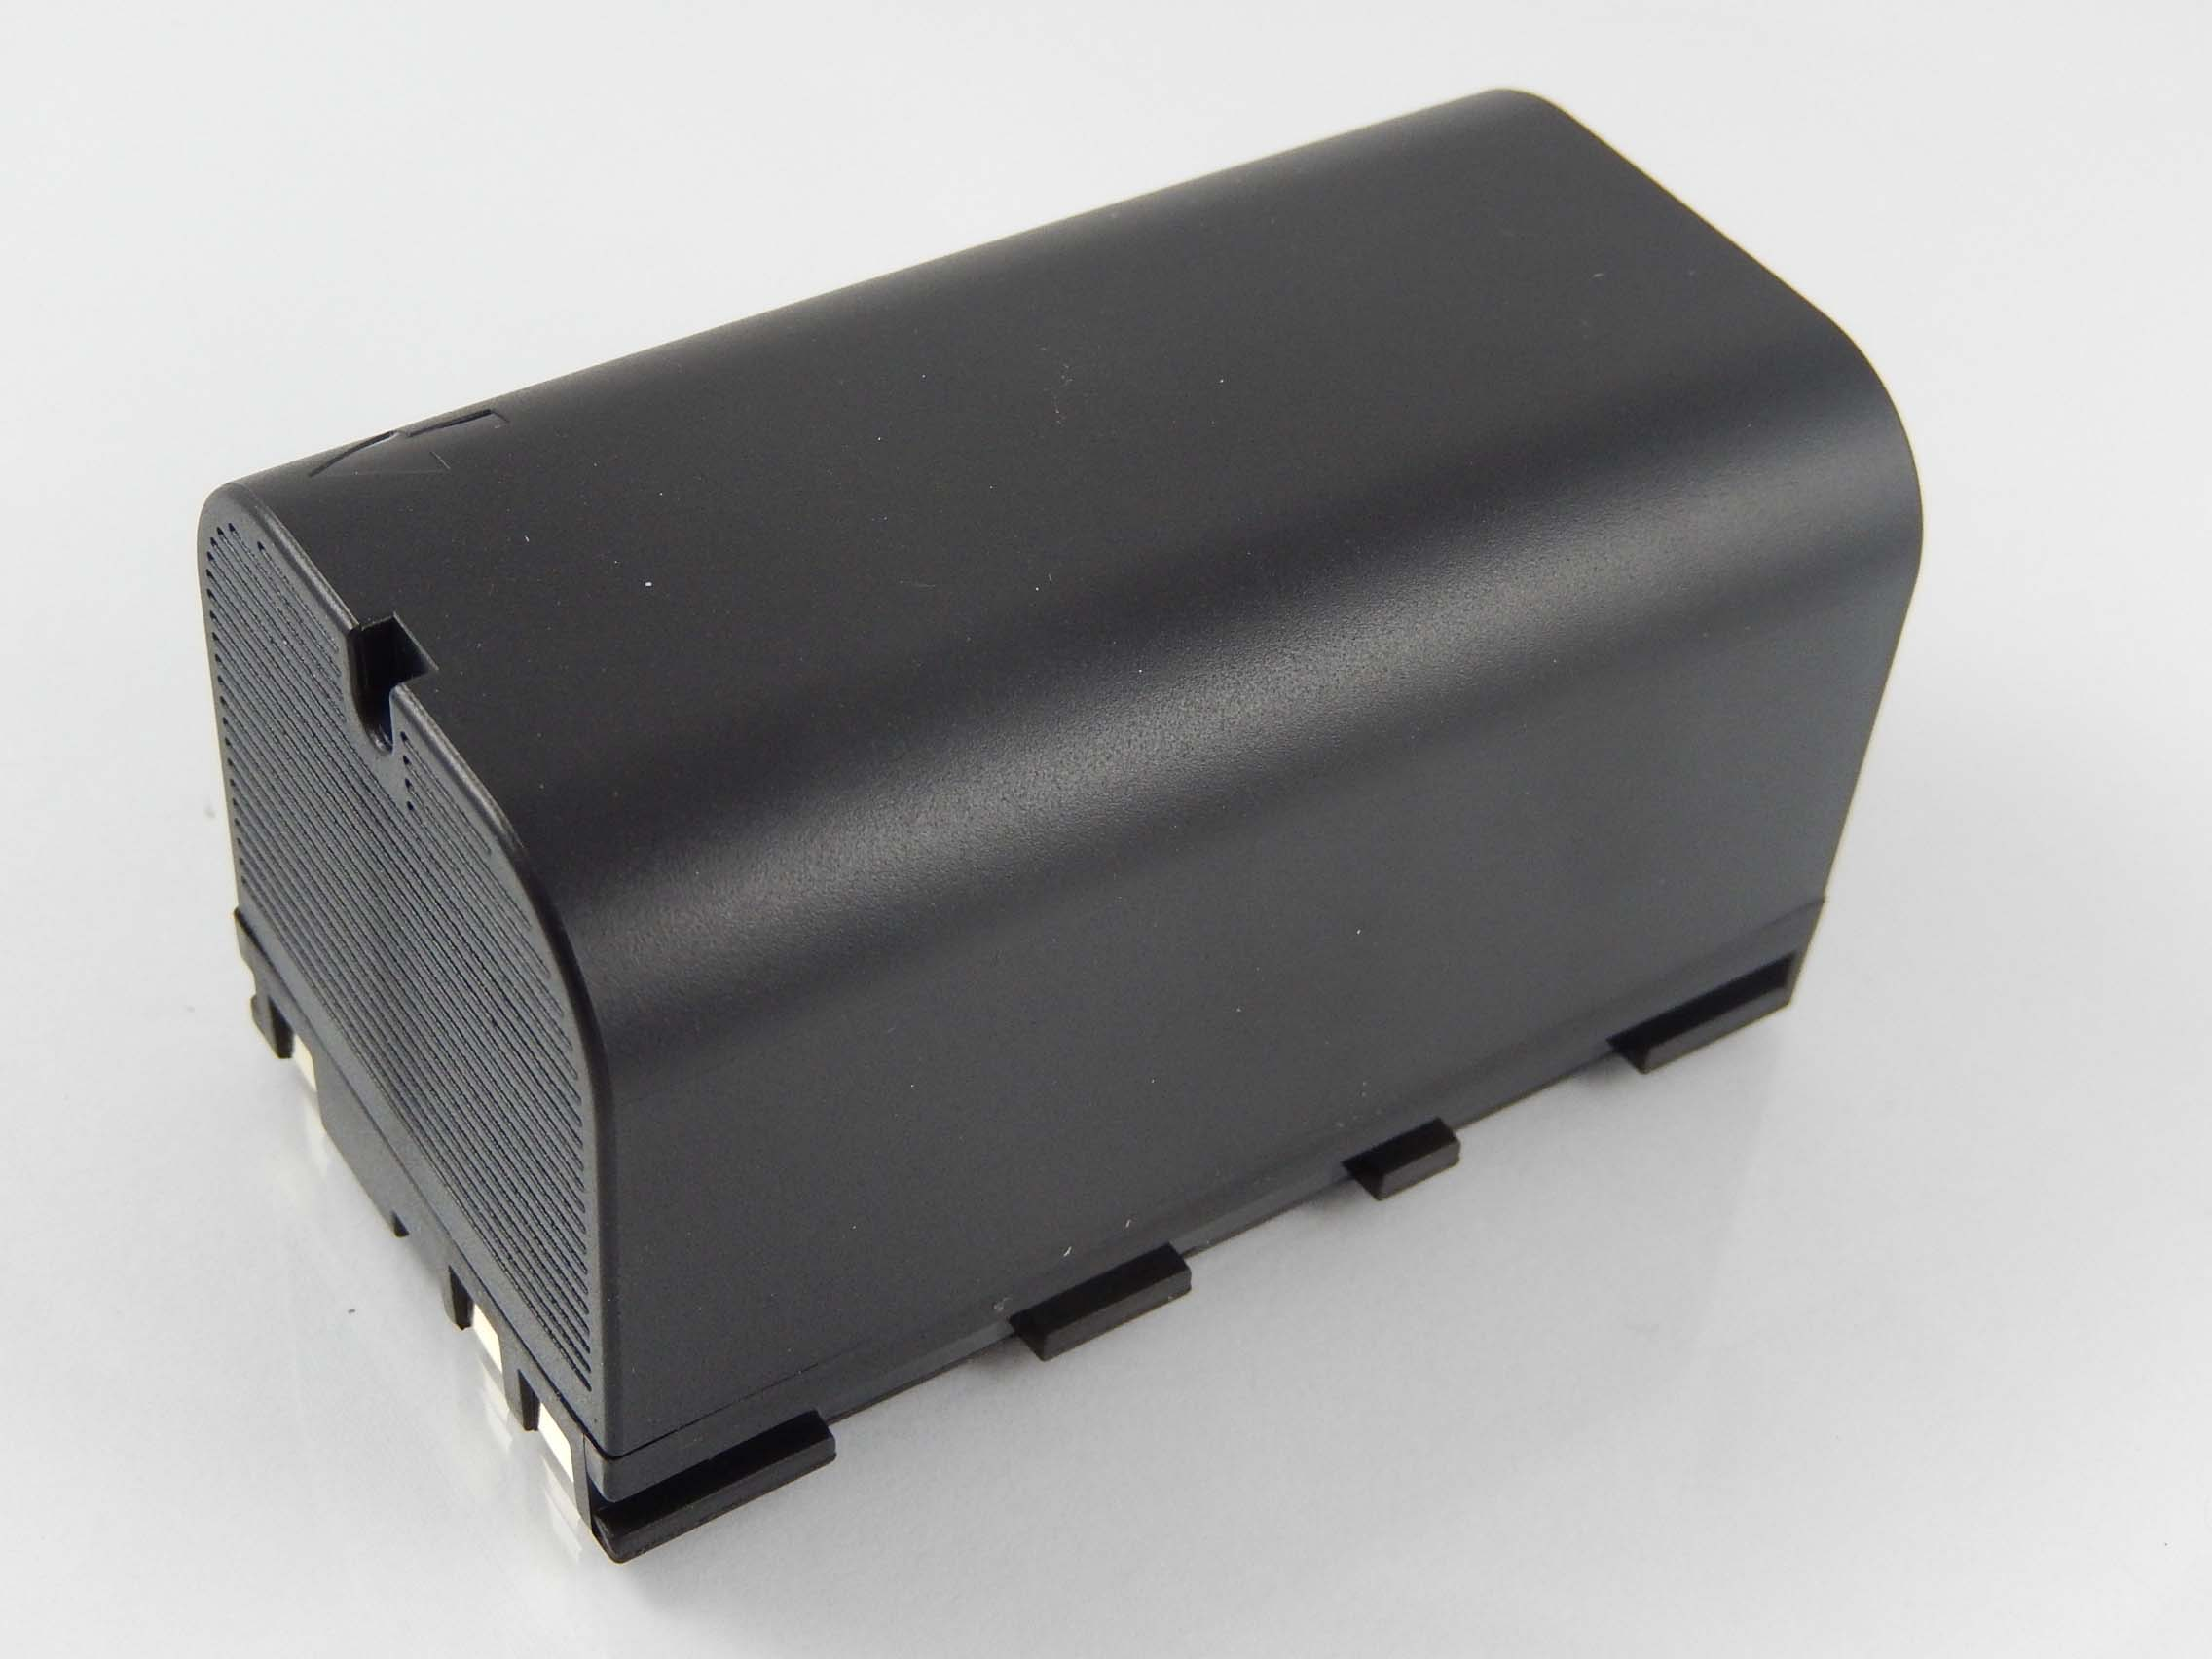 VHBW kompatibel mit Leica Flexline TS09, Li-Ion Akku Volt, Messgerät, TS02 - 5600 TS06, 7.4